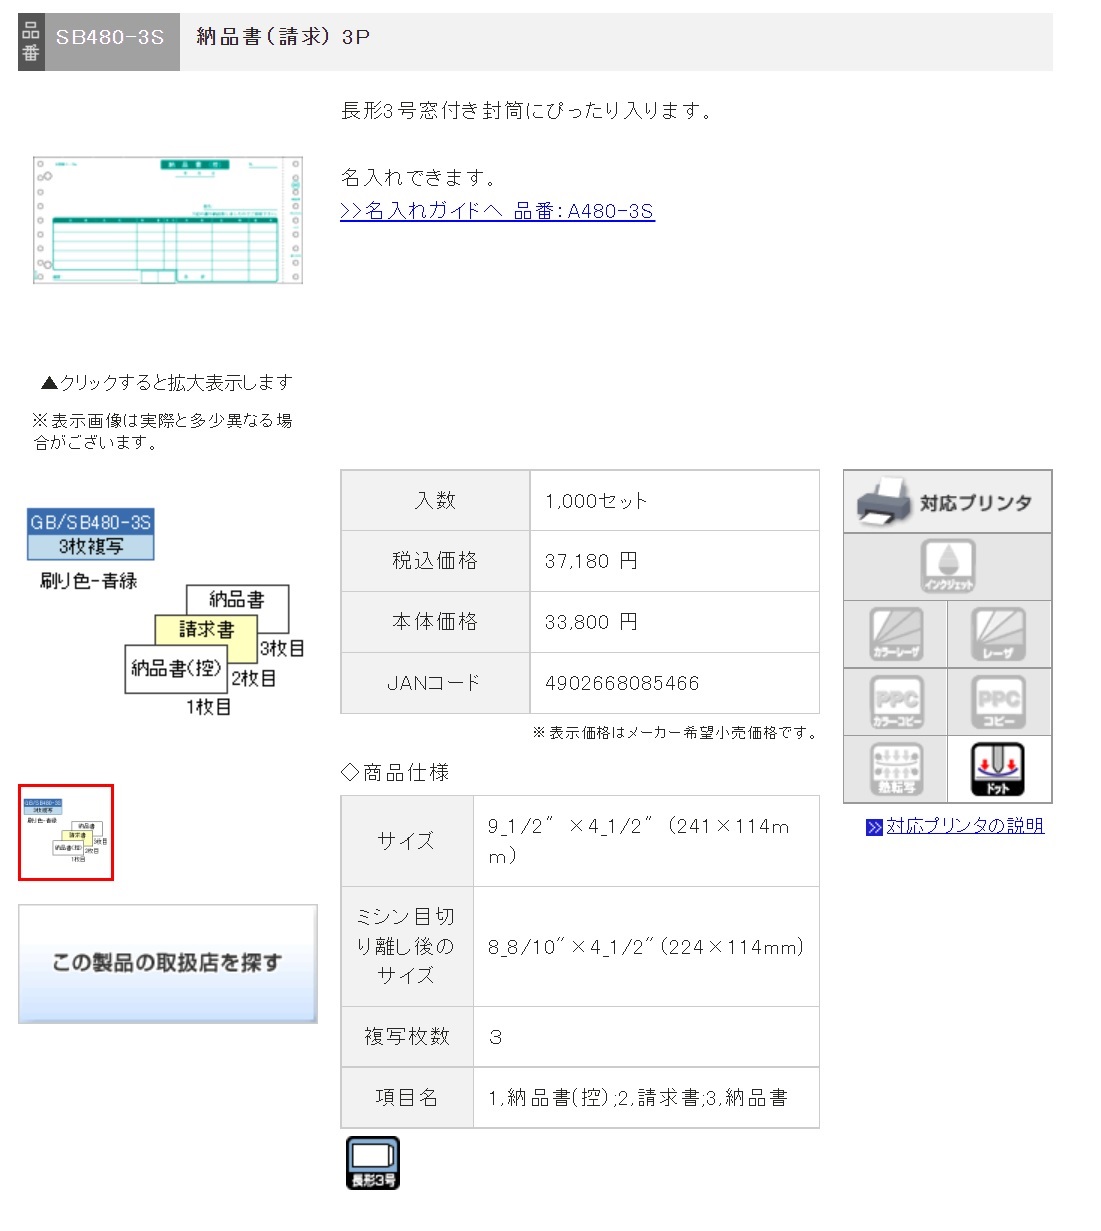 ヒサゴ コンピュータ用帳票 ドットプリンタ用 SB776C 1000セット - 3